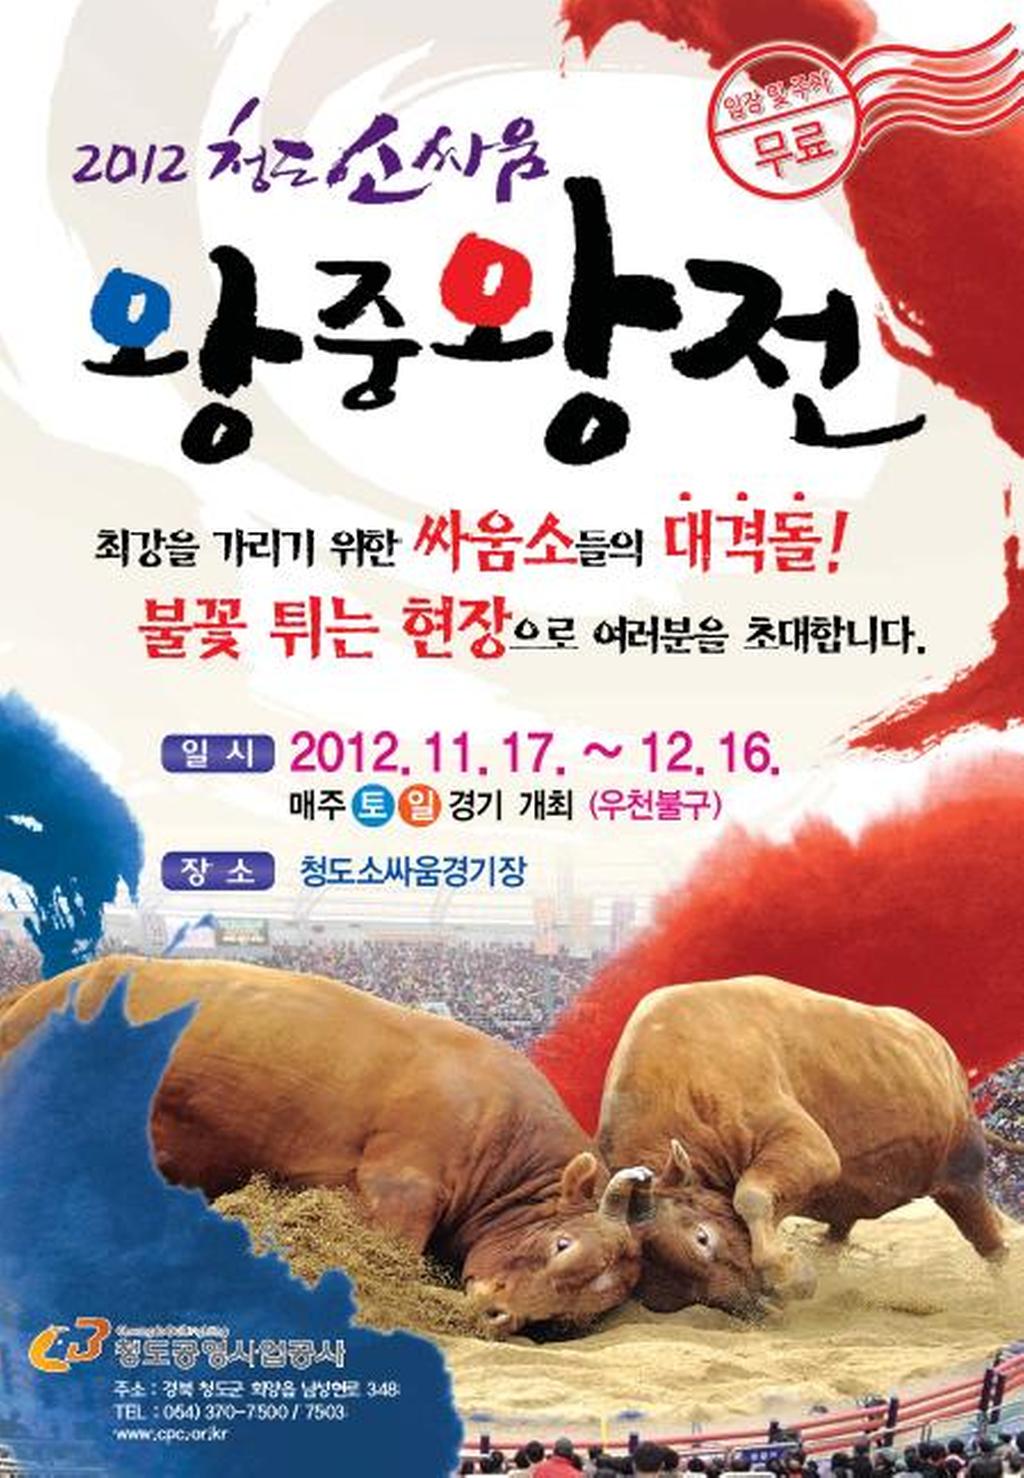 2012 청도소싸움 왕중왕전 개최